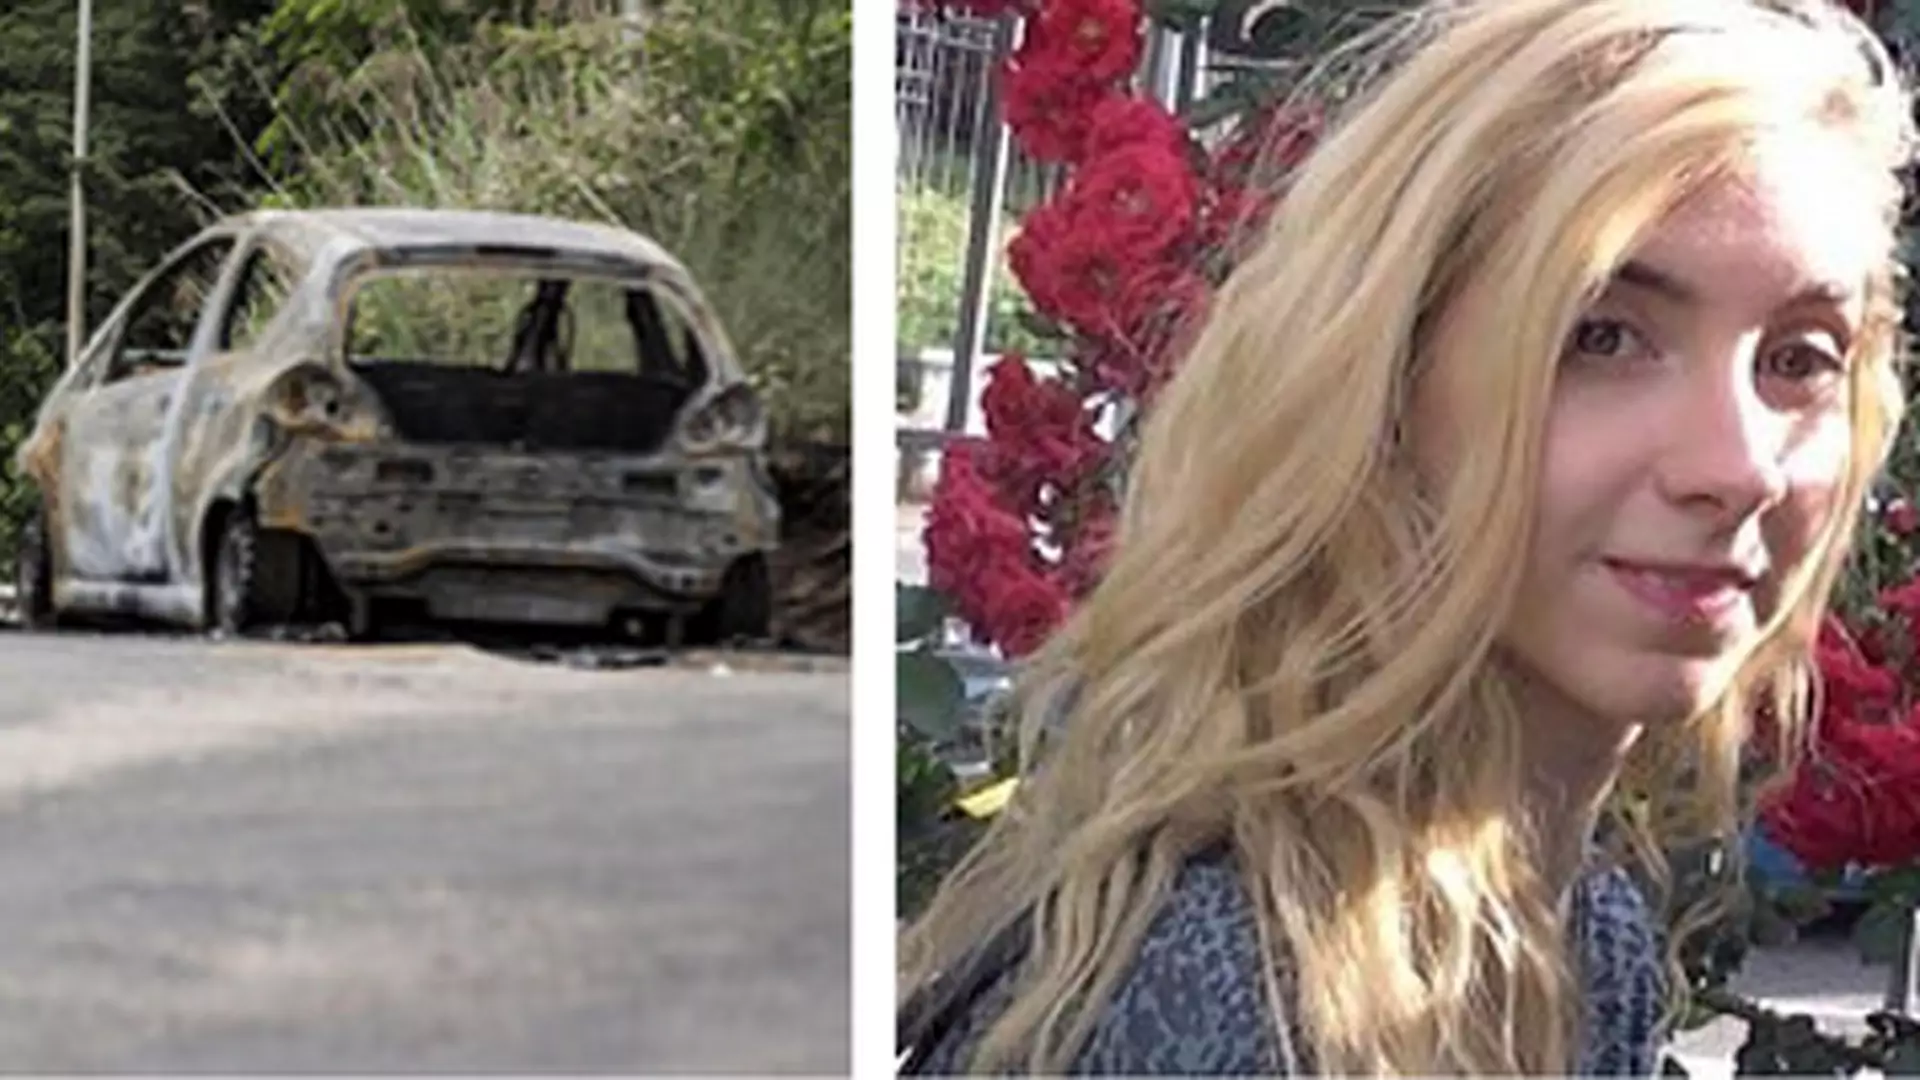 22-latka zginęła w podpalonym przez jej chłopaka samochodzie. Nikt się nie zatrzymał, żeby ją uratować